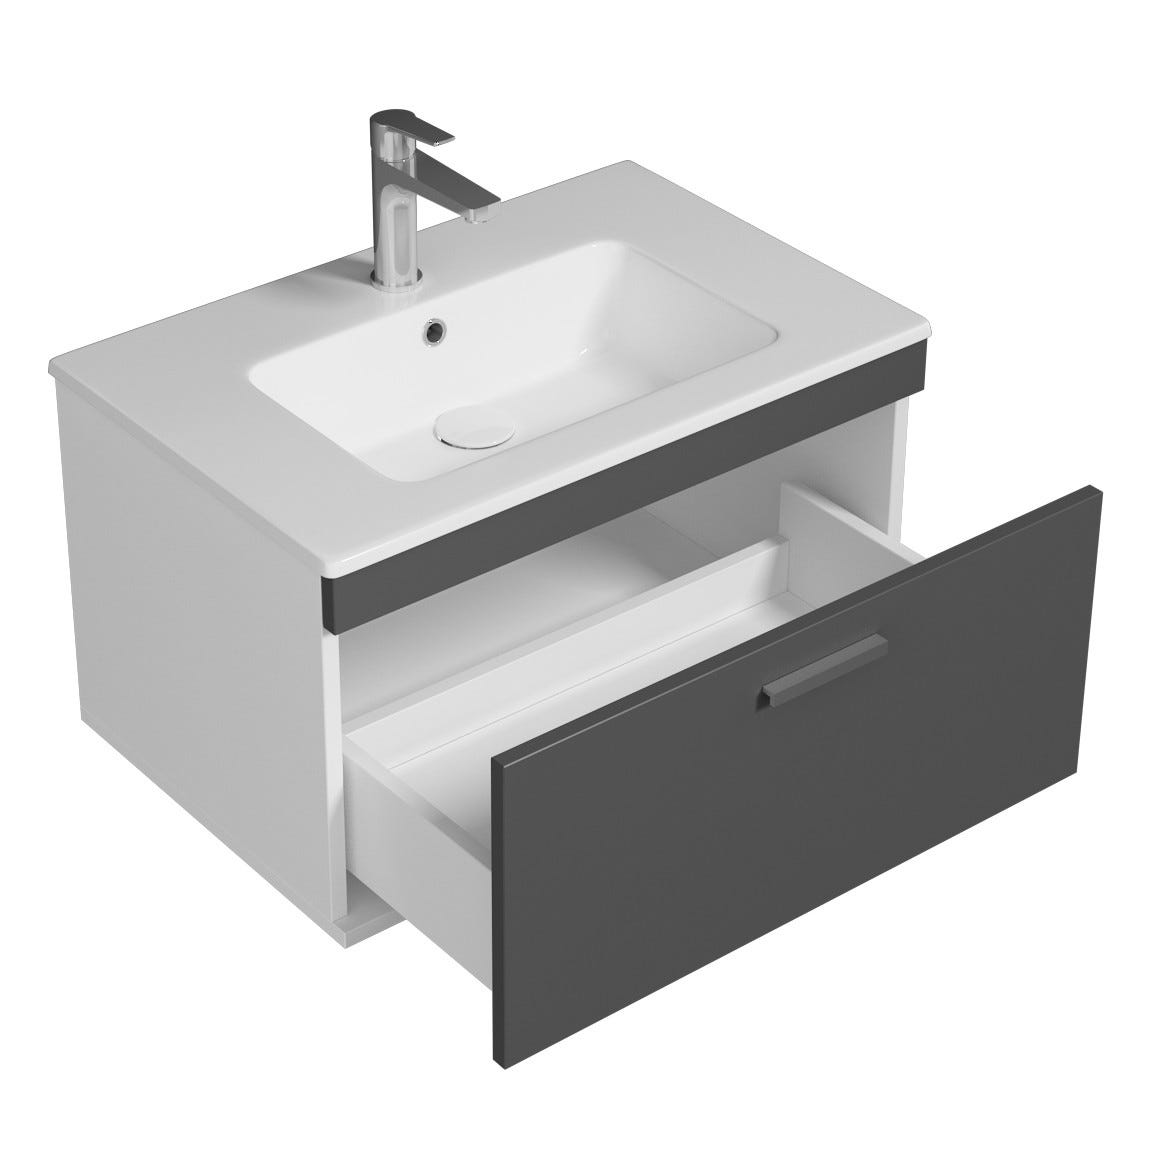 RUBITE Meuble salle de bain simple vasque 1 tiroir gris anthracite largeur 70 cm 1